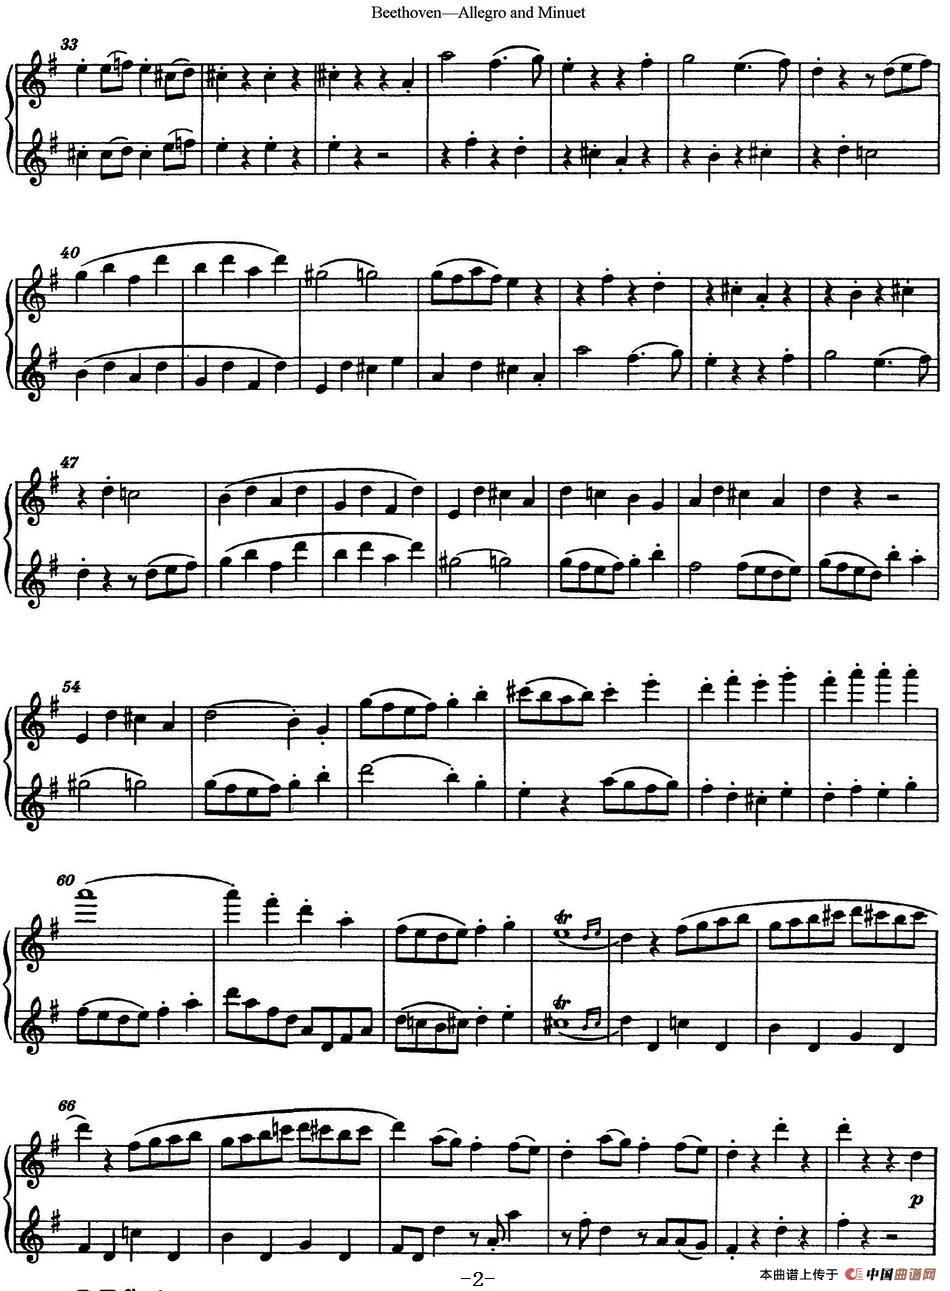 贝多芬快板及小步舞曲二重奏长笛谱